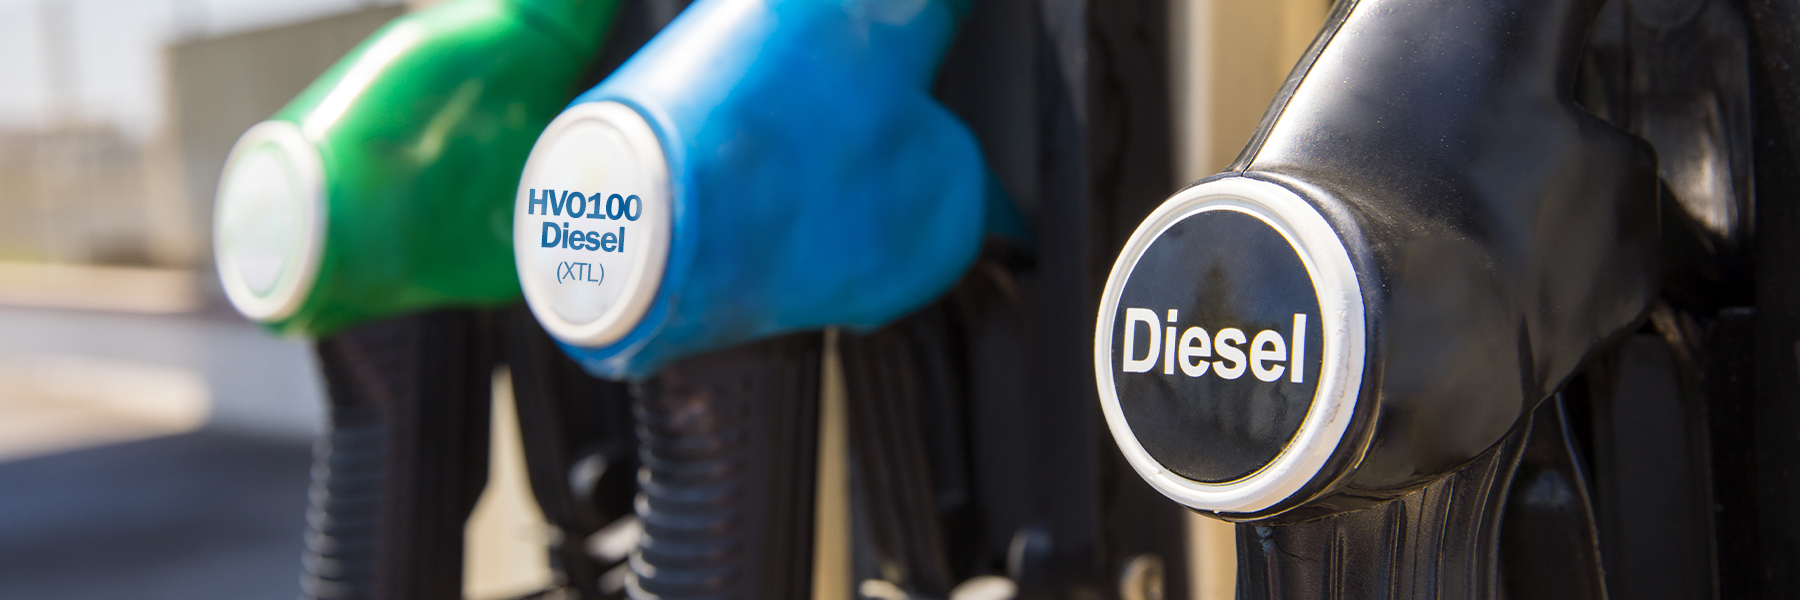 Keine CO2-Steuer auf HVO100 Diesel